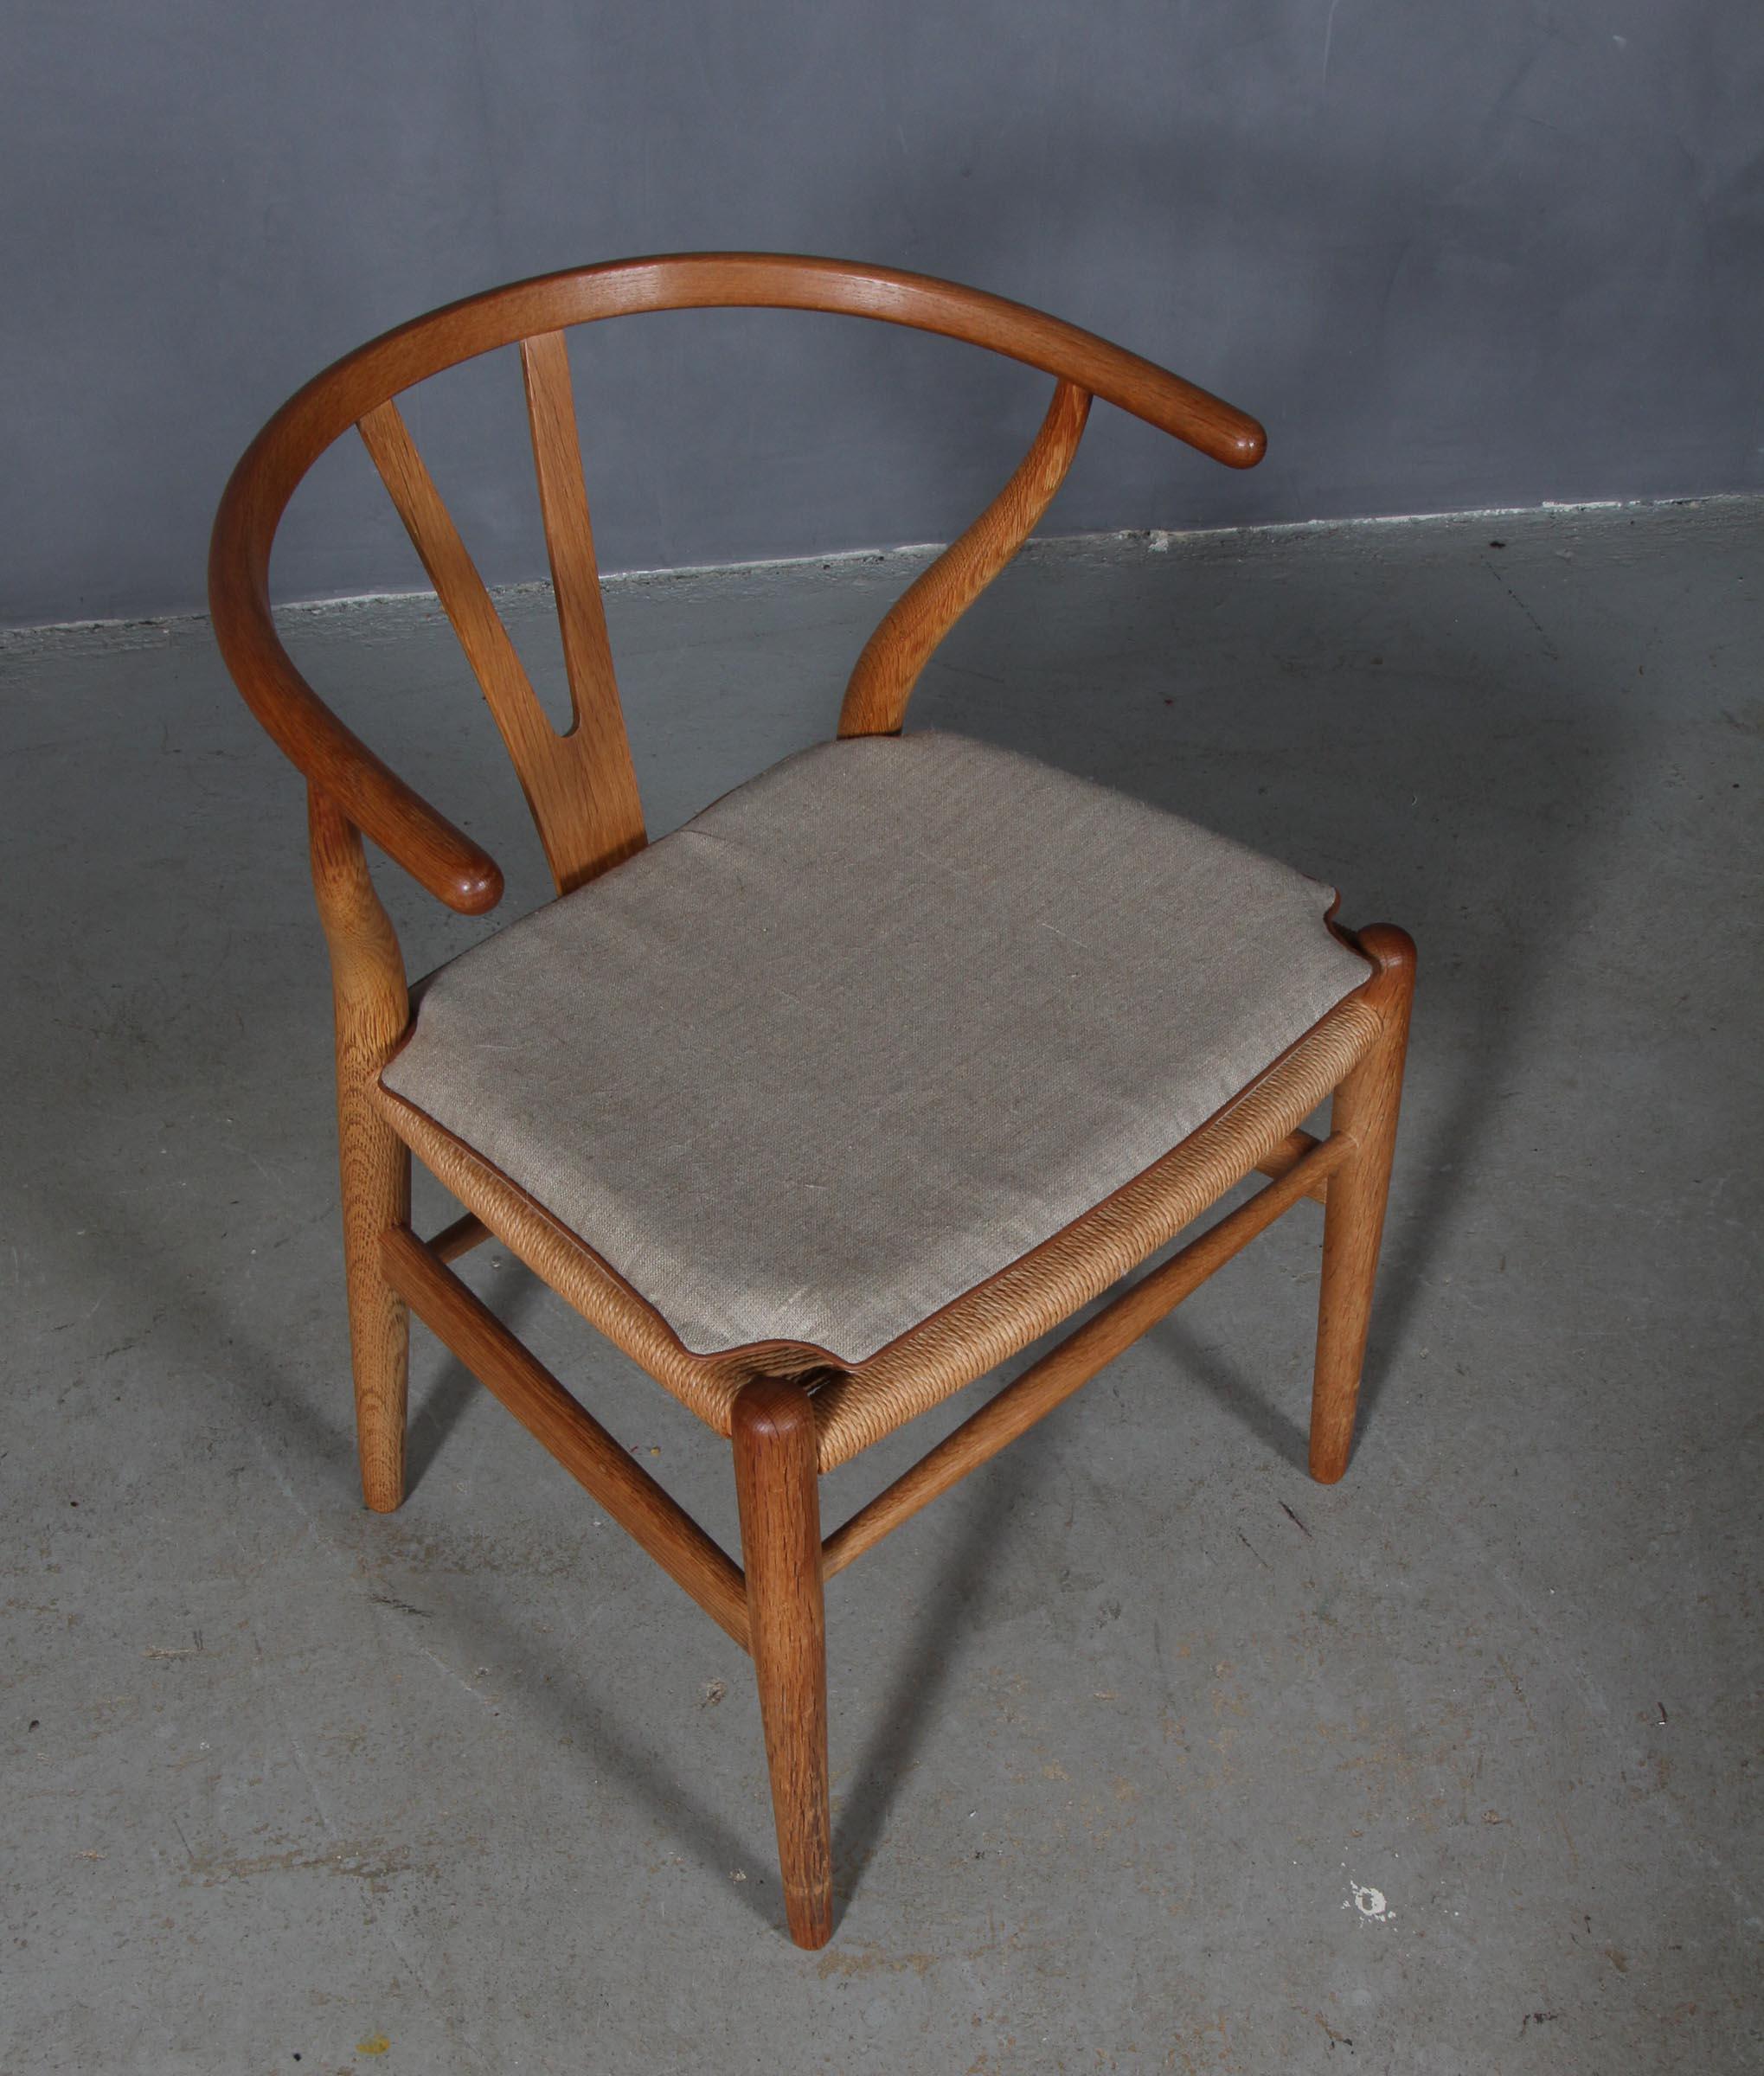 Hans J. Wegner Kissen für Querlenkerstuhl Modell CH24.

Hergestellt aus Segeltuch mit Lederschlauch und Schaumstoff von guter Qualität.

Nur das Kissen, nicht der Stuhl.